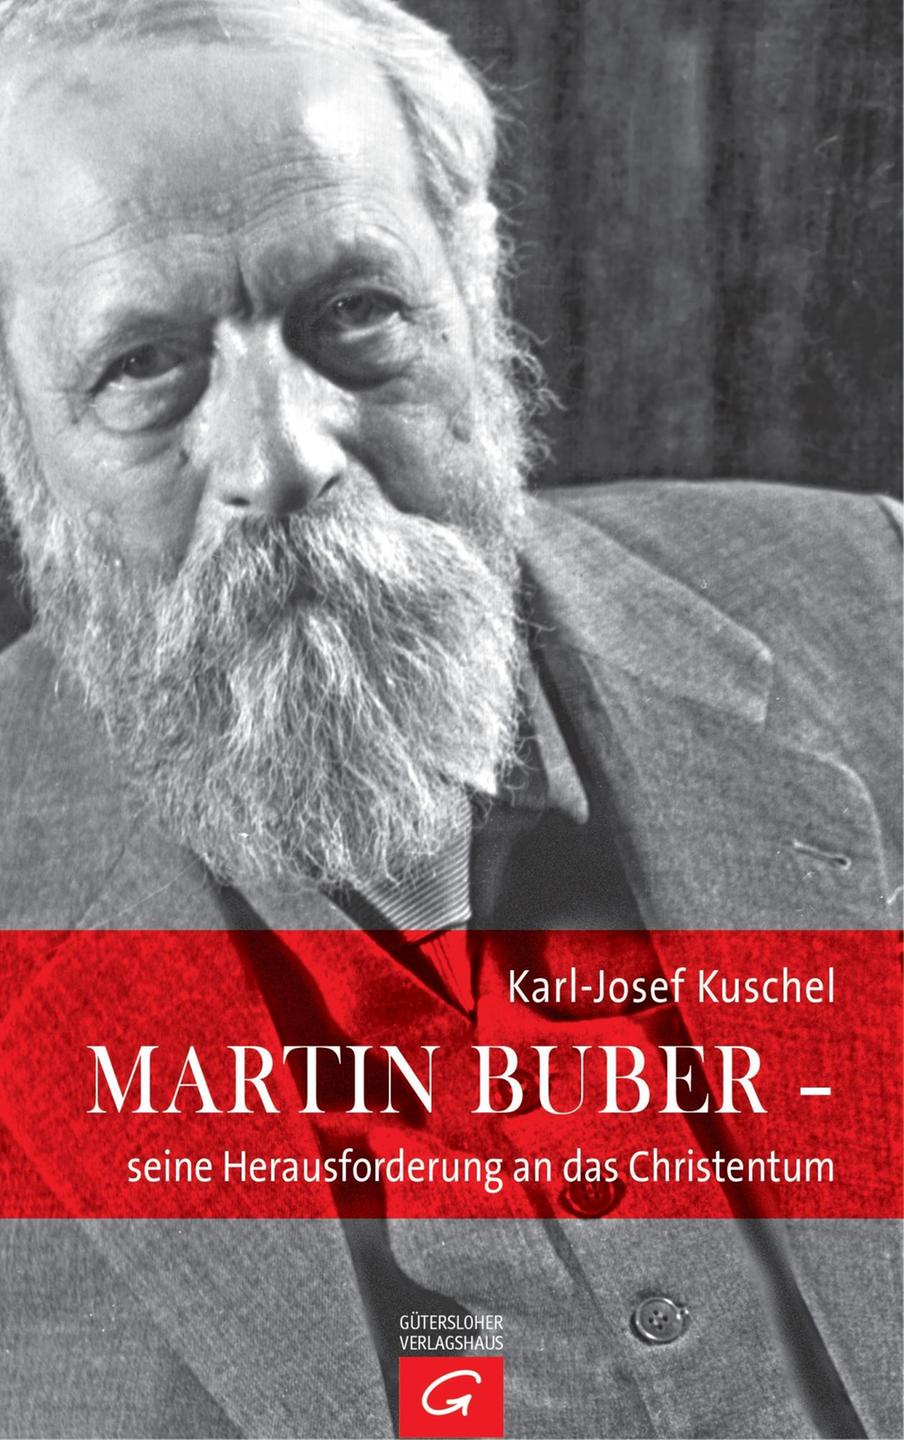 Karl-Josef Kuschel: Martin Buber - seine Herausforderung an das Christentum